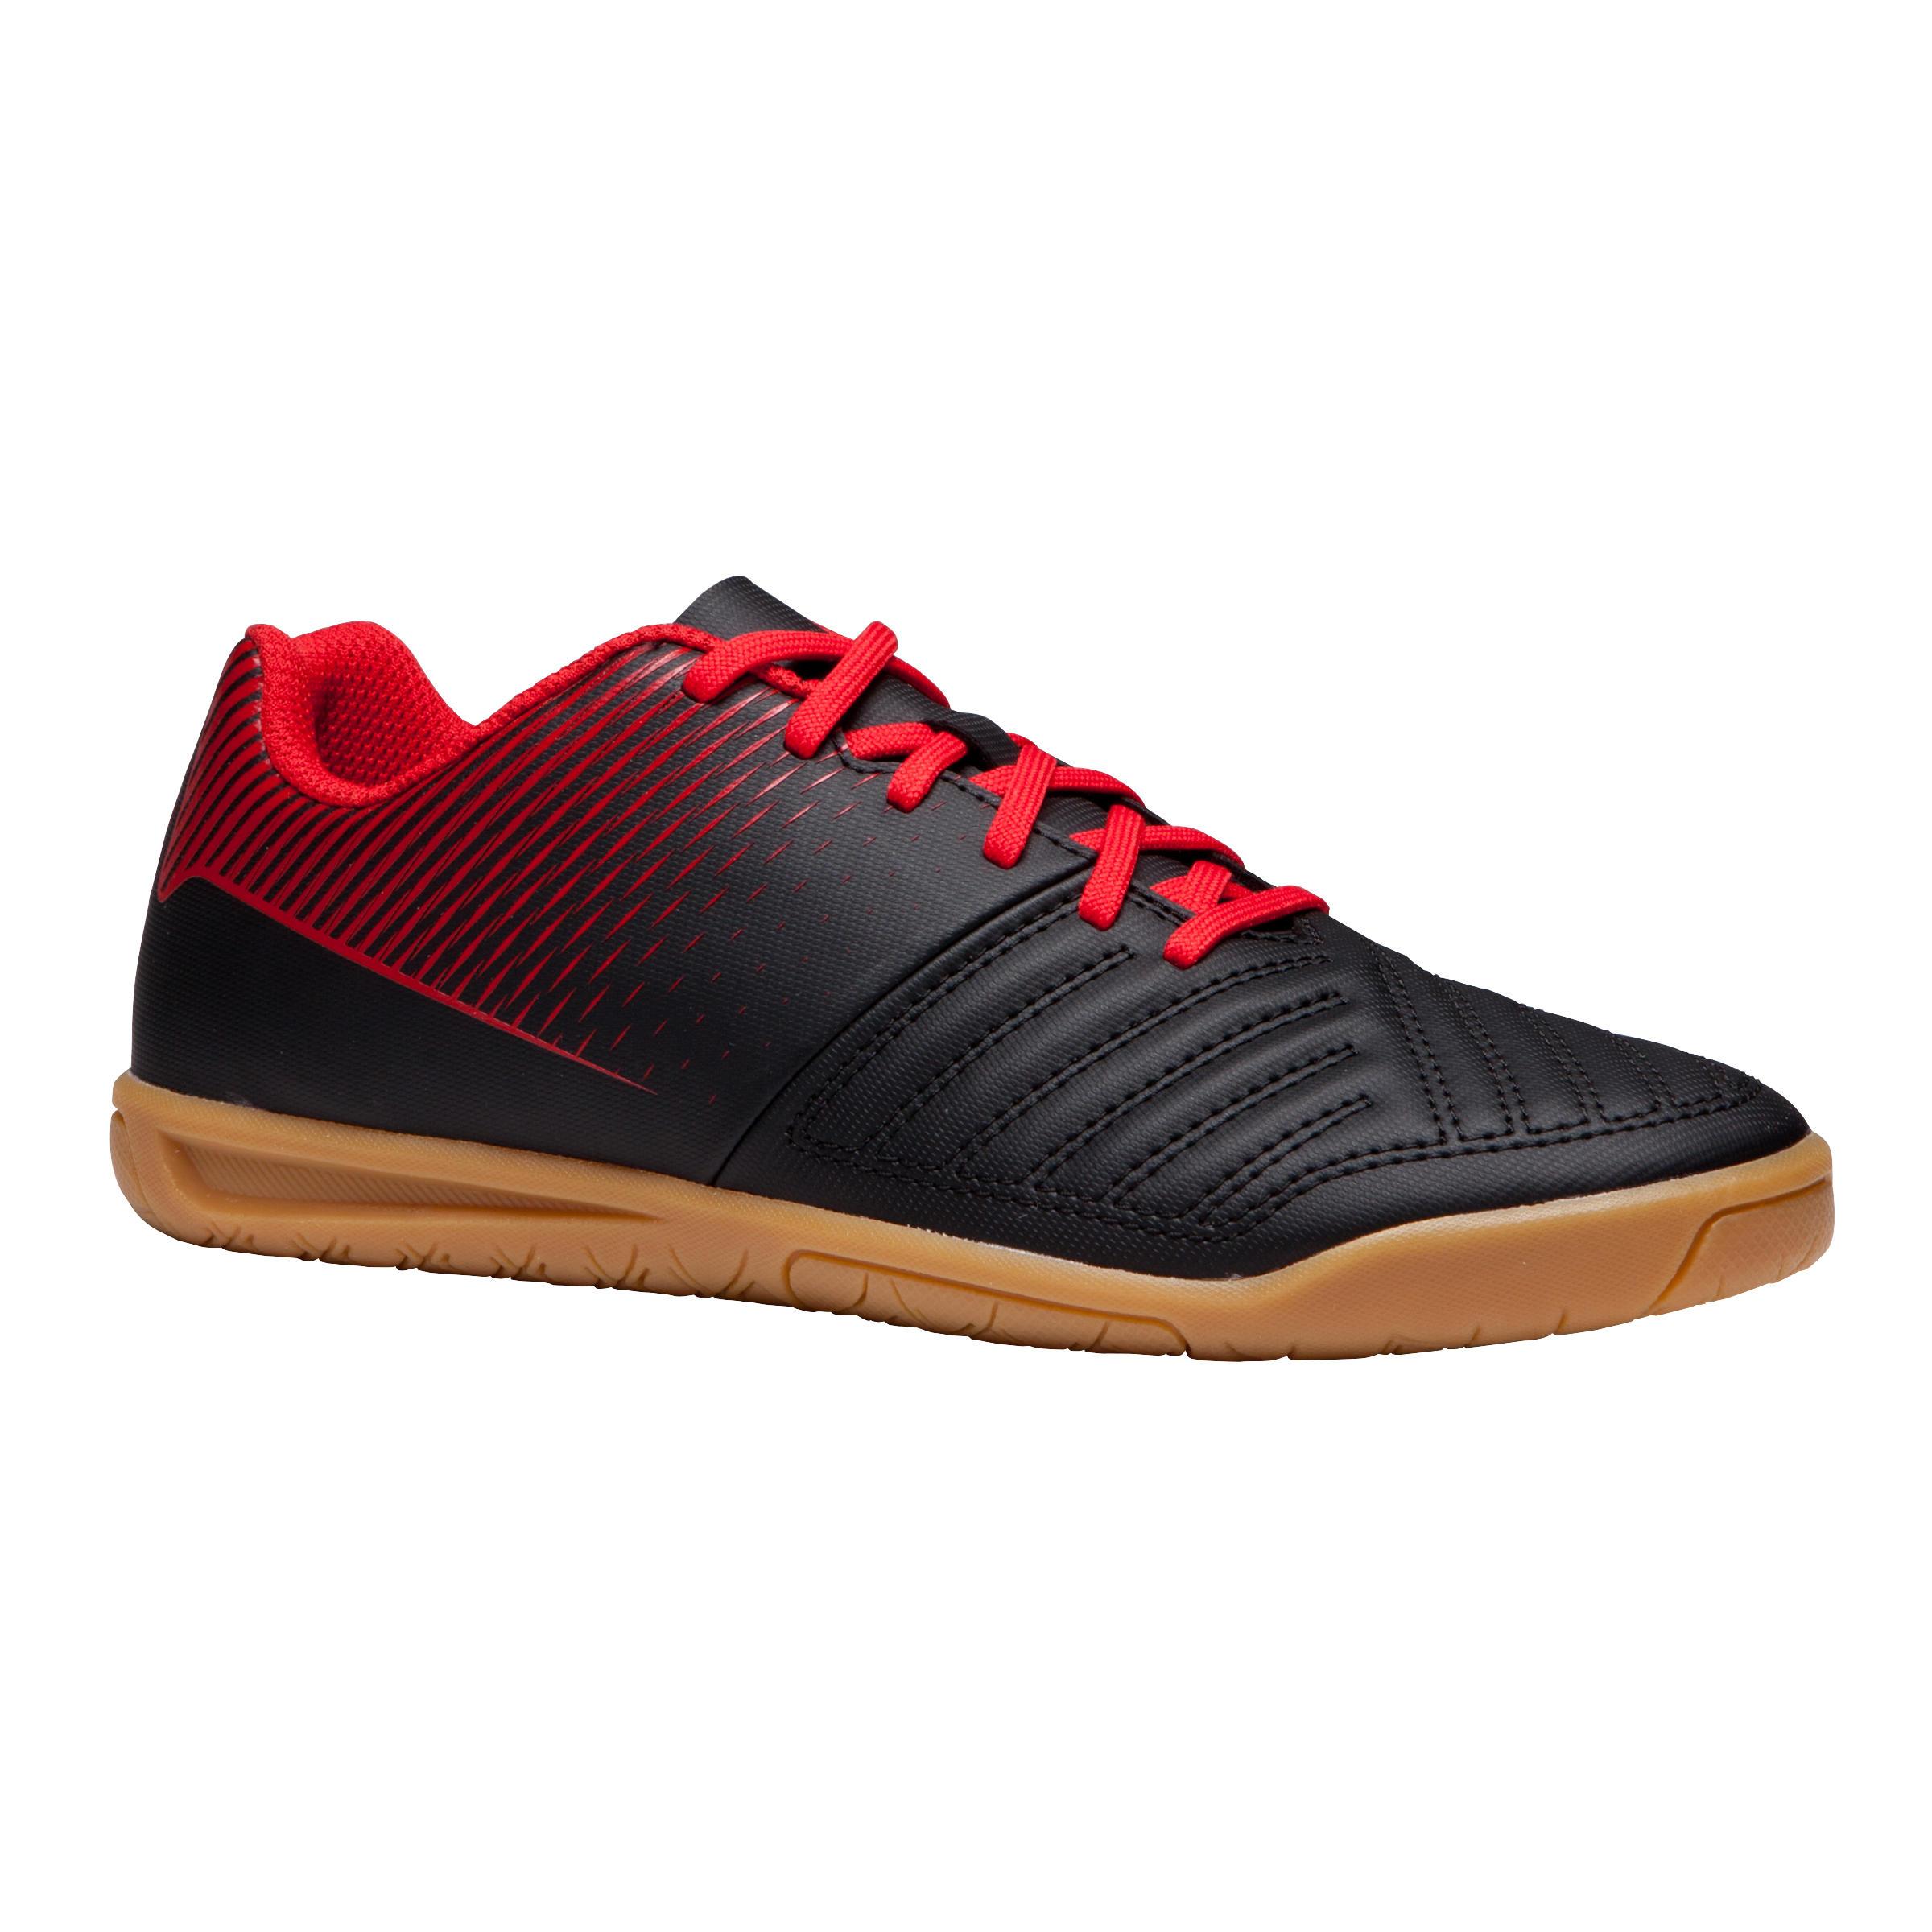 [ด่วน!! โปรโมชั่นมีจำนวนจำกัด] รองเท้าฝึกซ้อมฟุตซอลสำหรับเด็กรุ่น AGILITY 100 SALA (สีดำ/แดง) สำหรับ ฟุตบอล